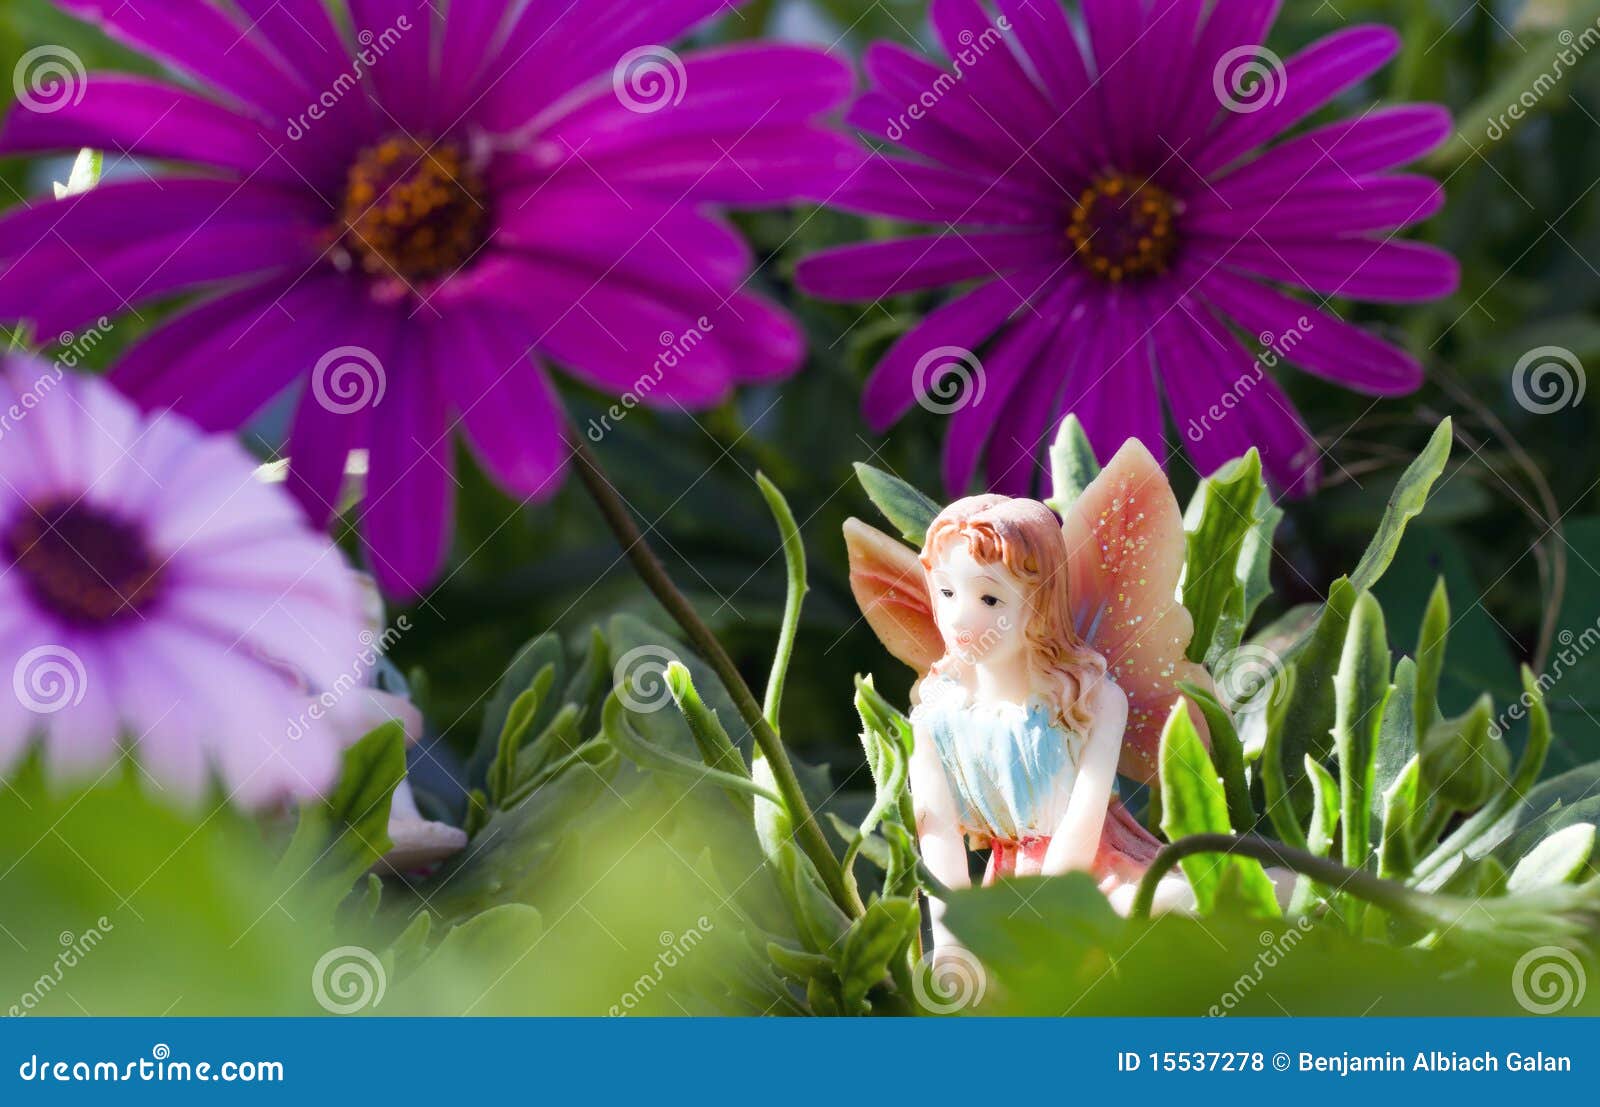 fairy on vegetation